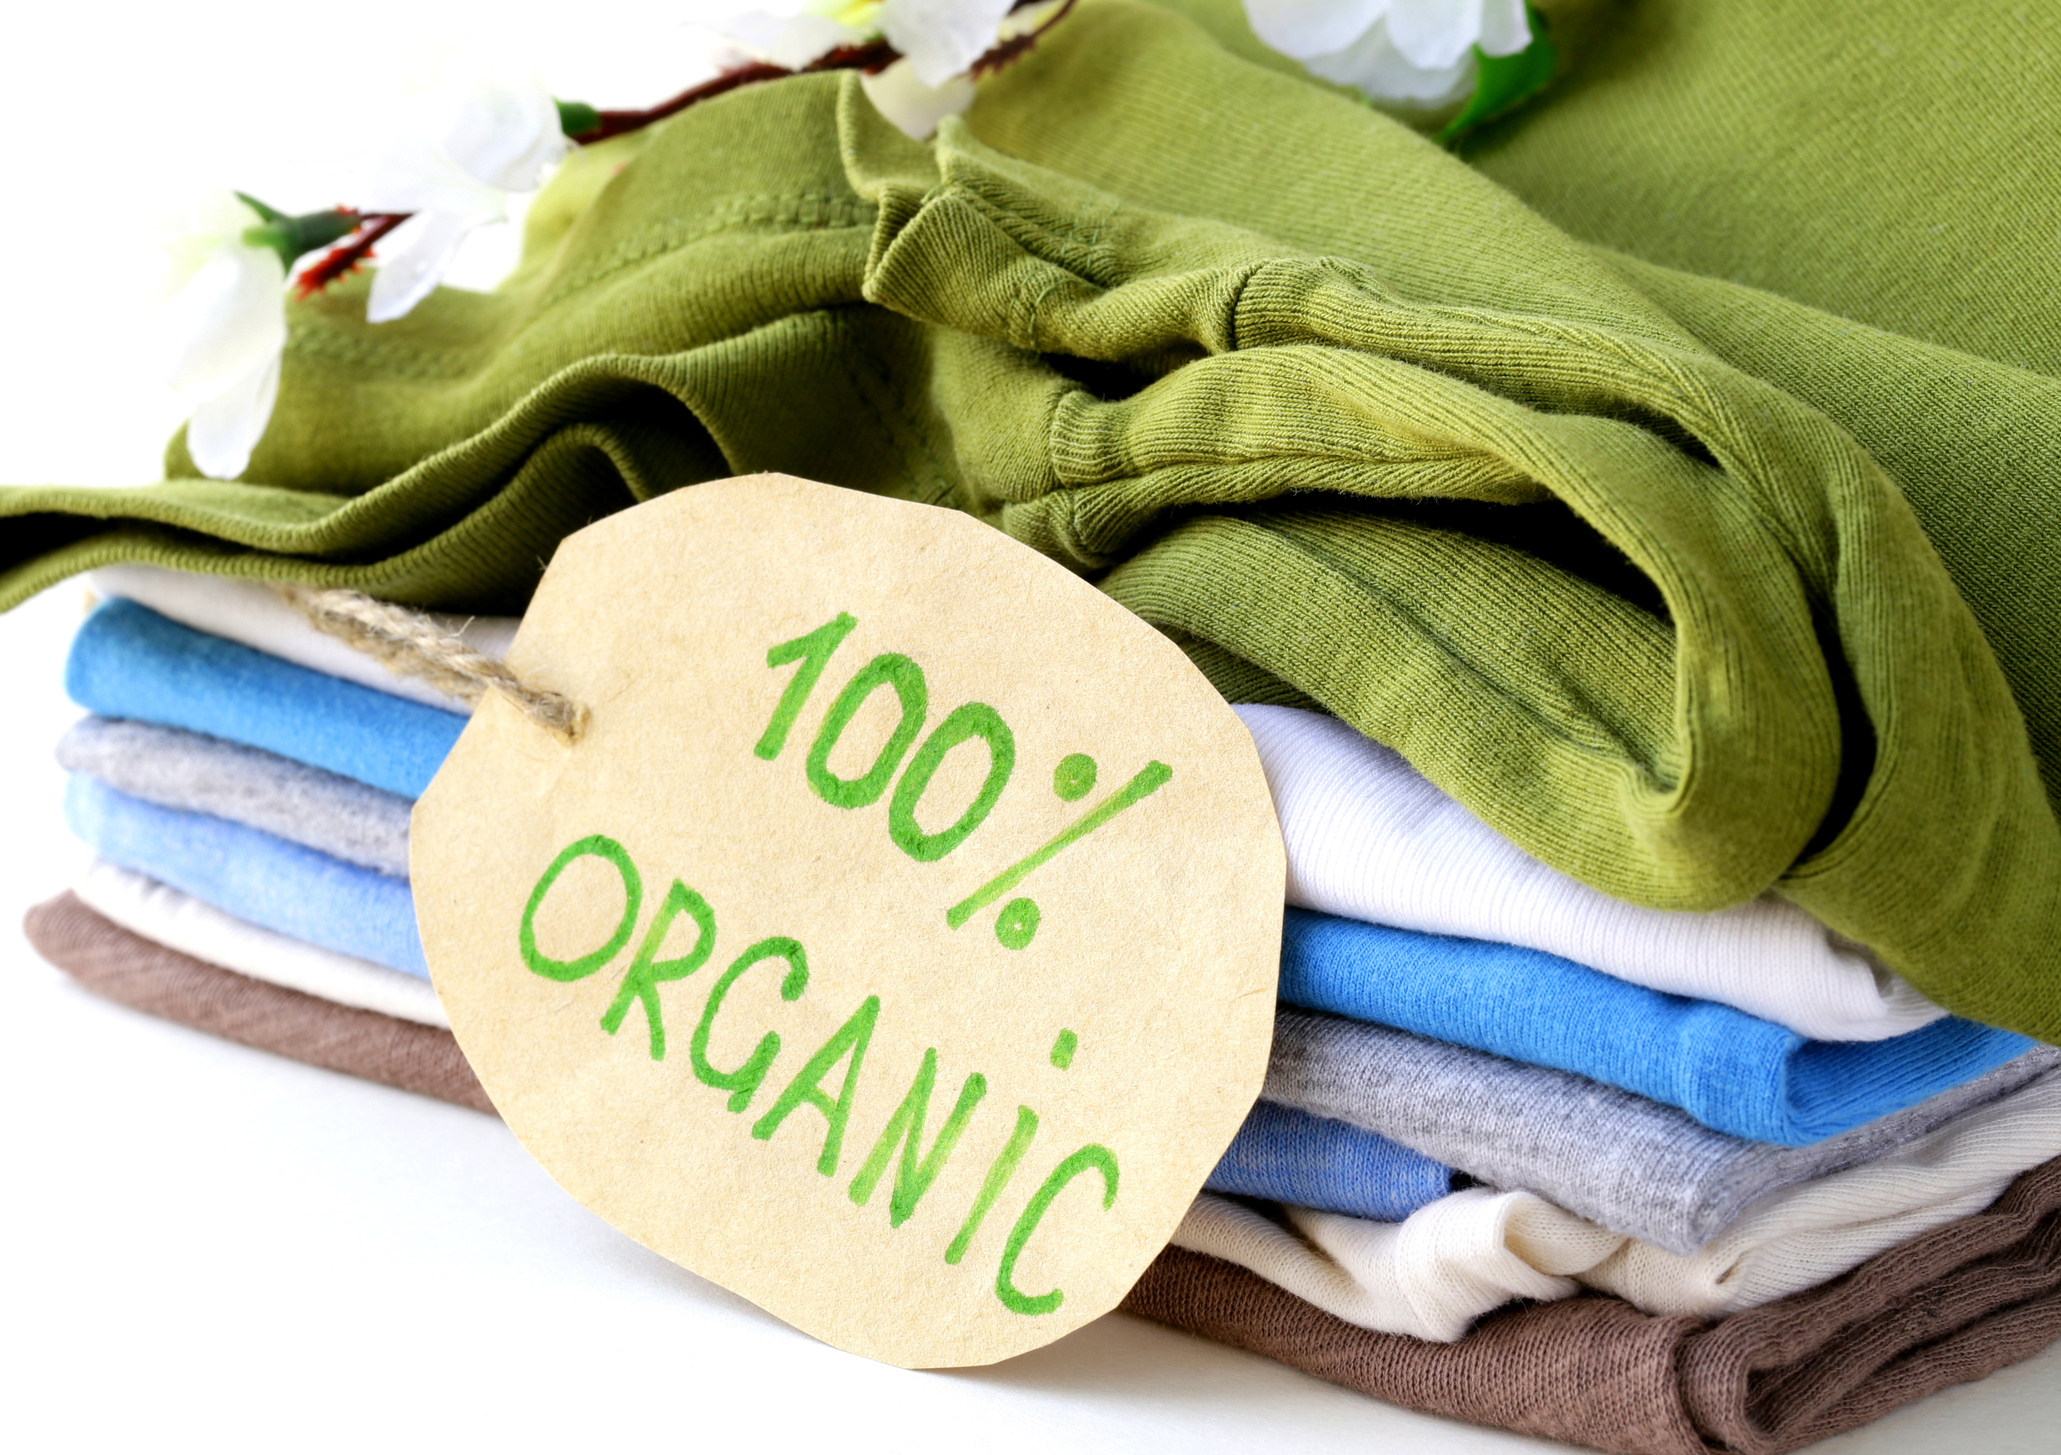 Товары из хлопка. Экологичная одежда. Экологичные ткани. Эко одежда. Экологически чистая одежда.